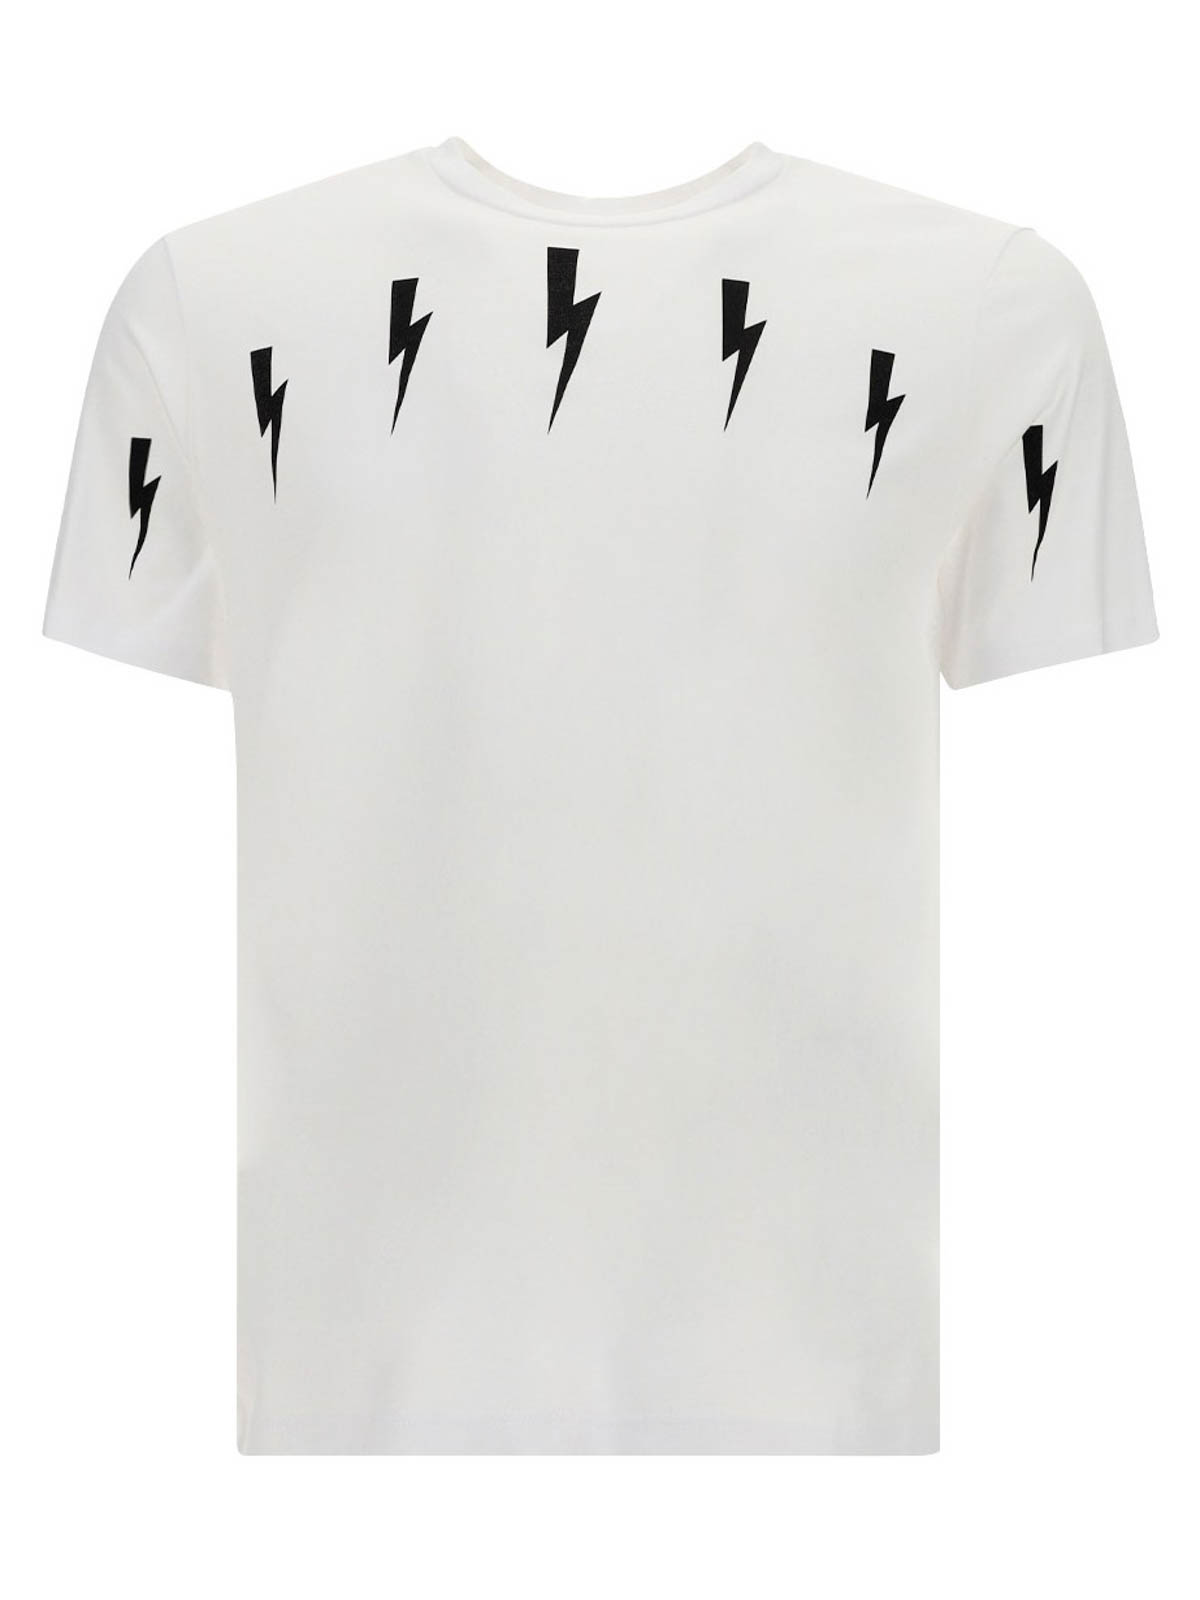 Neil Barrett Lightning Print Cotton T-shirt In White